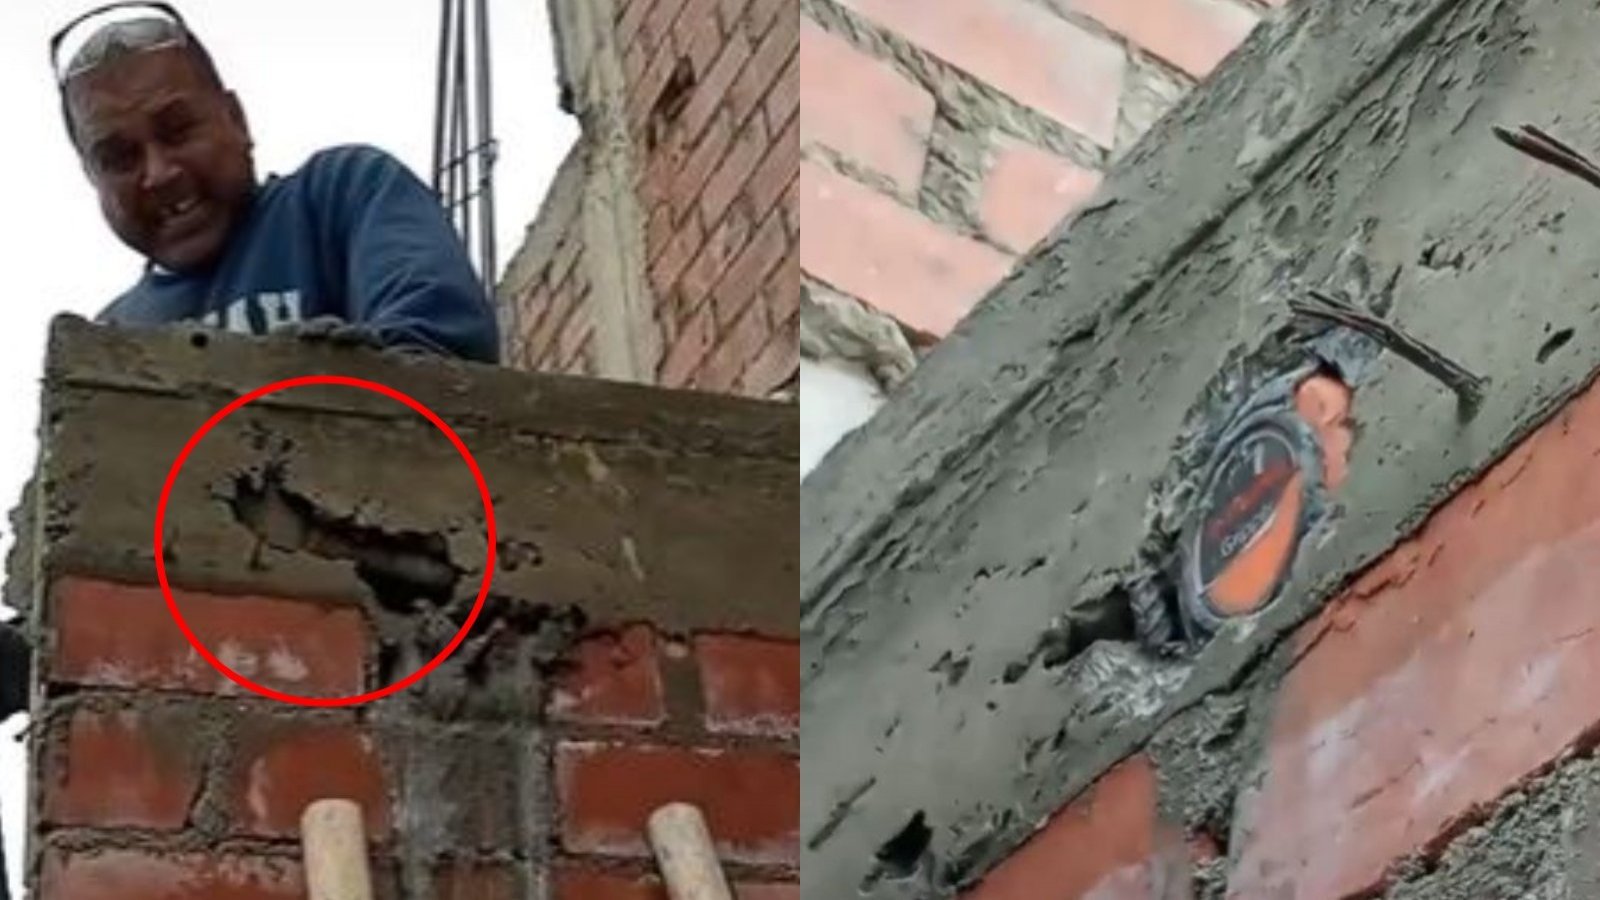 Captura de viral de albañiles que dejaron dentro del concreto herramientas y luego las encontraron incrustadas en un muro recientemente edificado